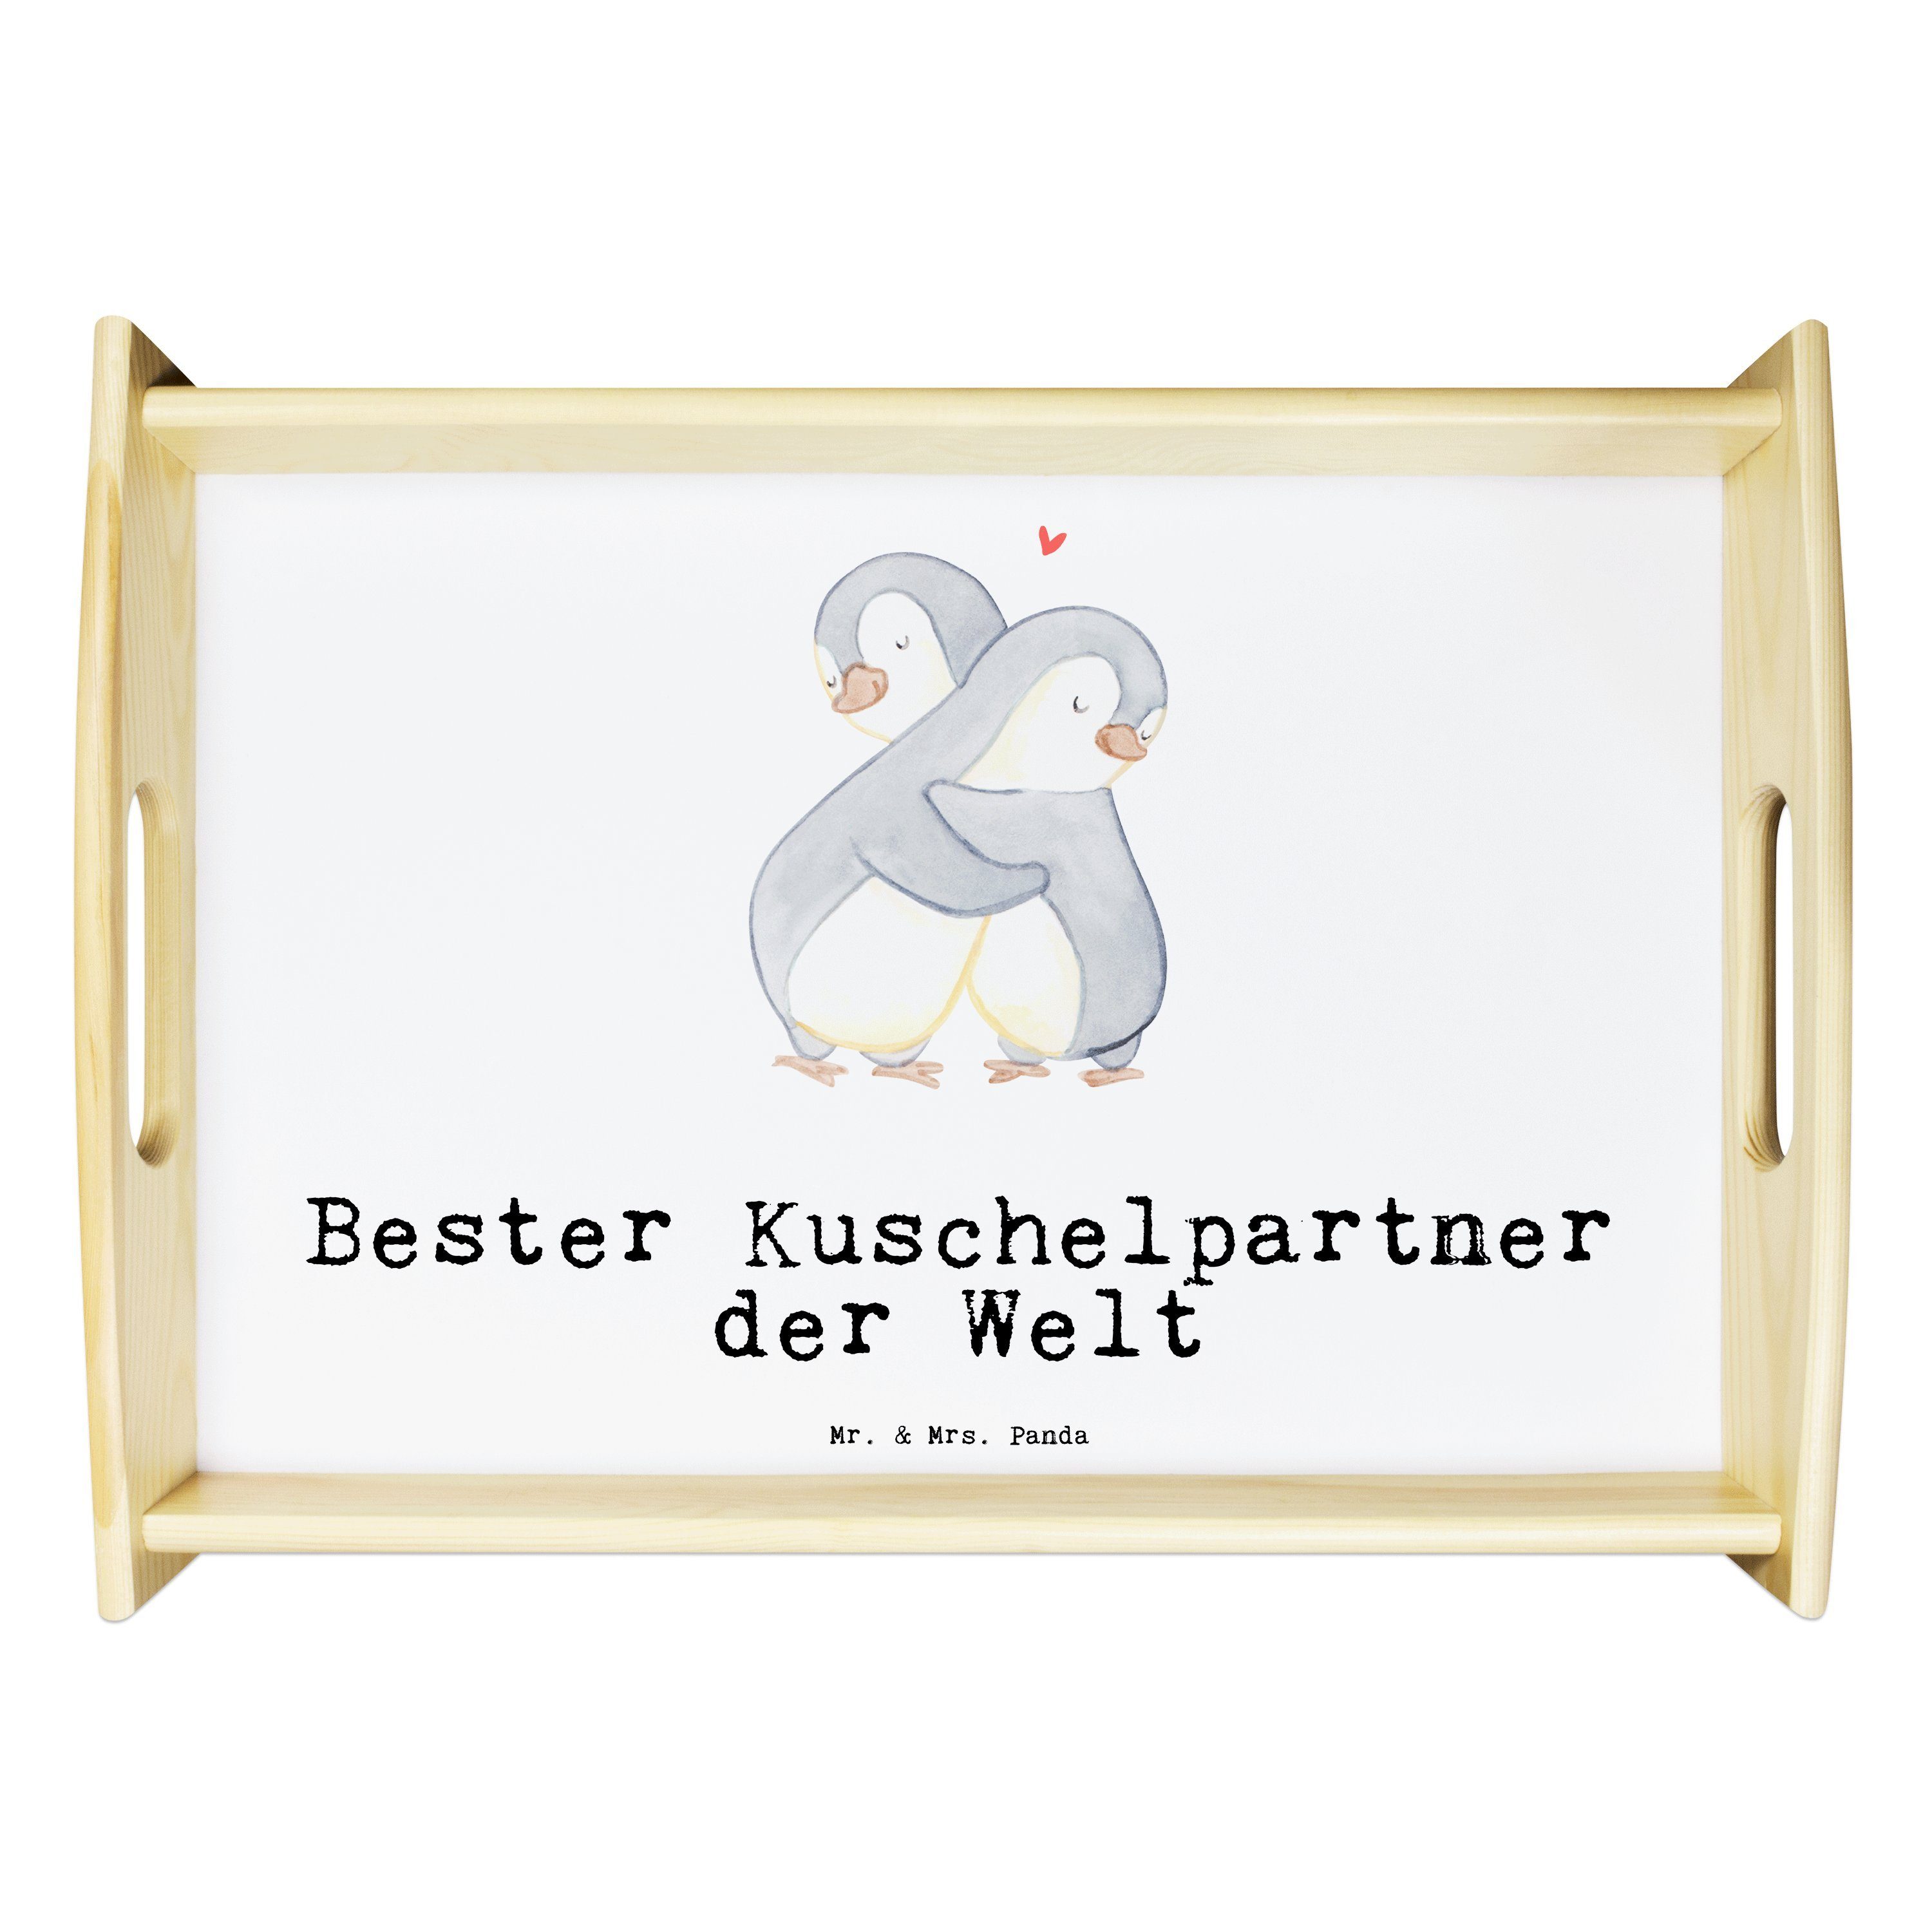 Mr. & Mrs. Panda Tablett Pinguin Bester Kuschelpartner der Welt - Weiß - Geschenk, Holztablett, Echtholz lasiert, (1-tlg)